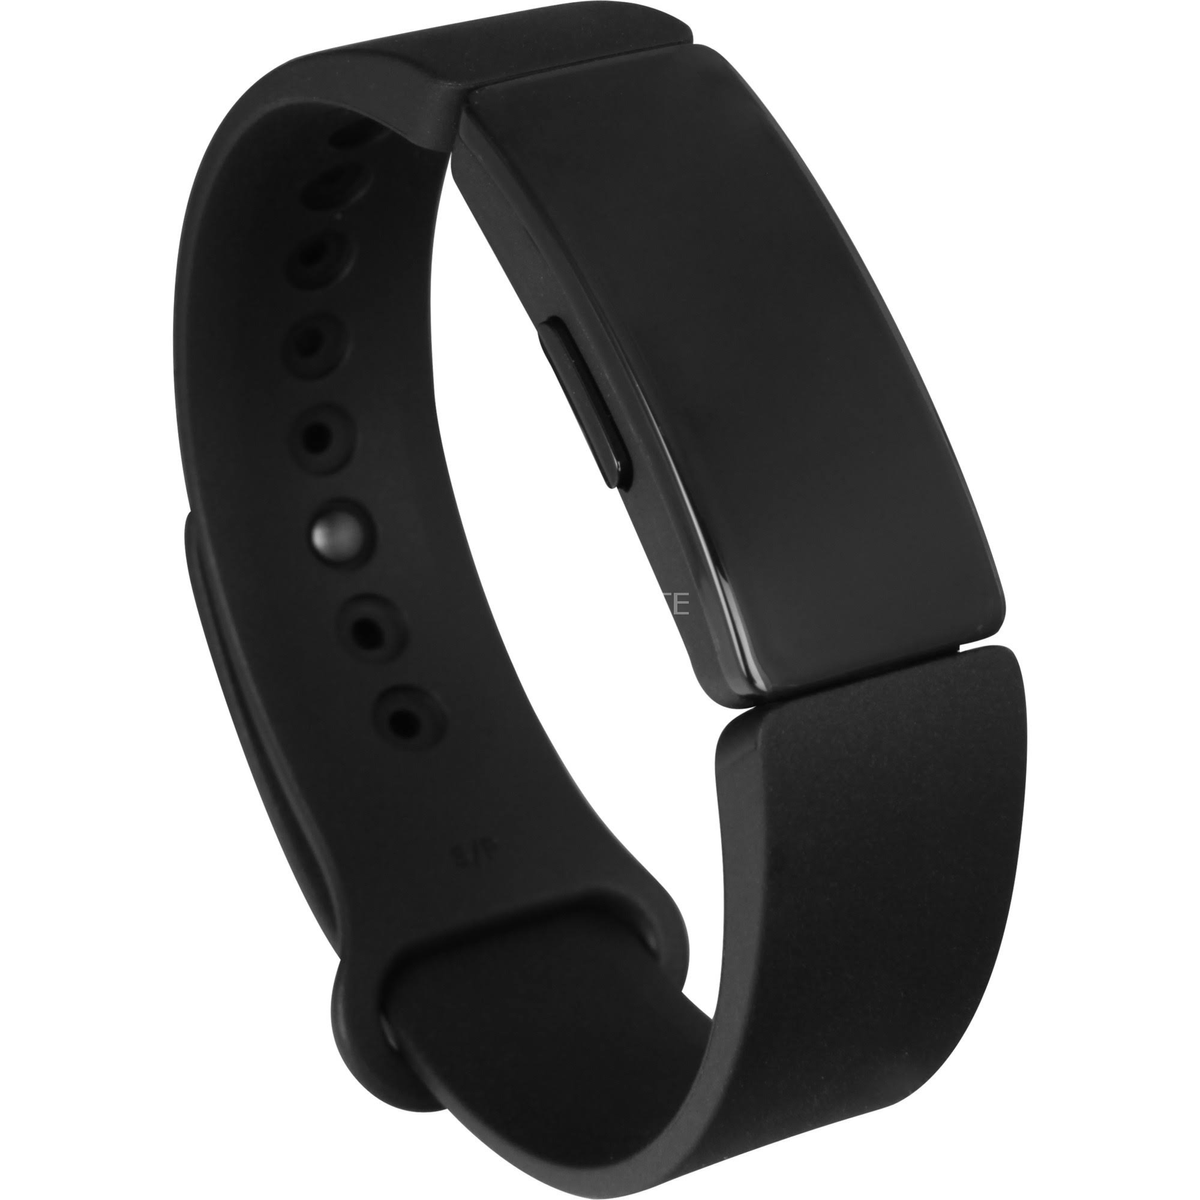 Pulsera Actividad Fitbit inspire negro black resistente al agua seguimiento del sueño deportiva hasta 5 dias autonomía smartband oled 49 039